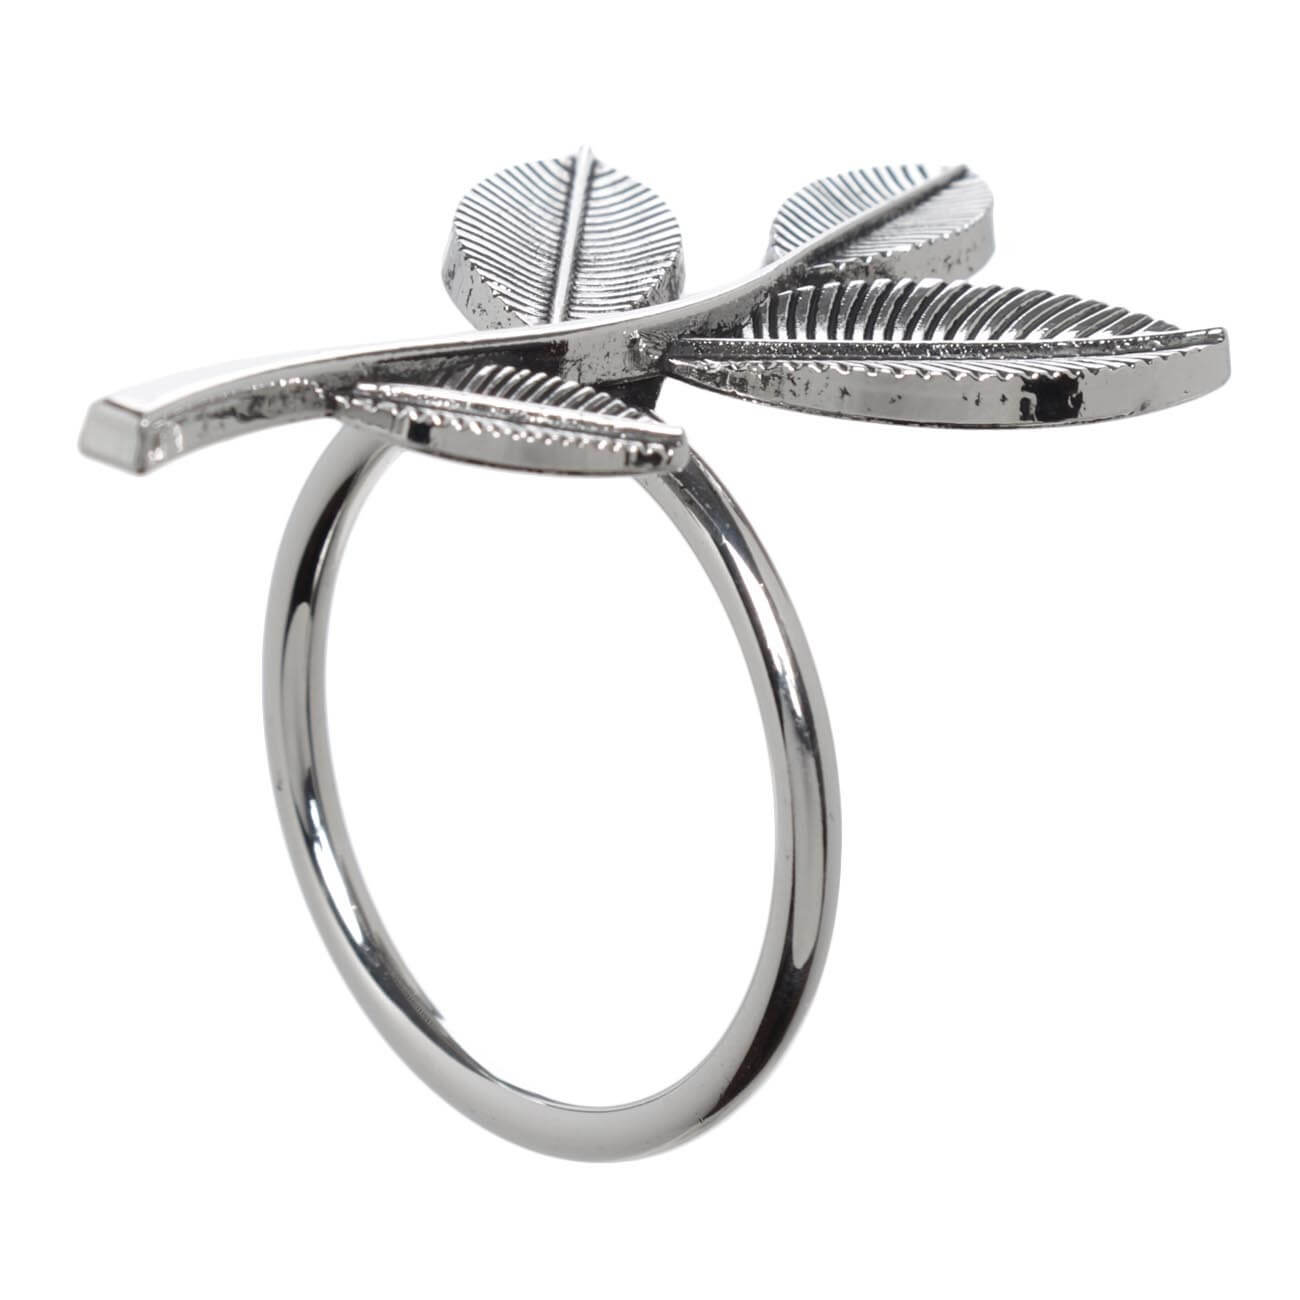 кольцо для салфеток 6 см металл серебристое ветка с листьями print Кольцо для салфеток, 6 см, металл, серебристое, Ветка с листьями, Print